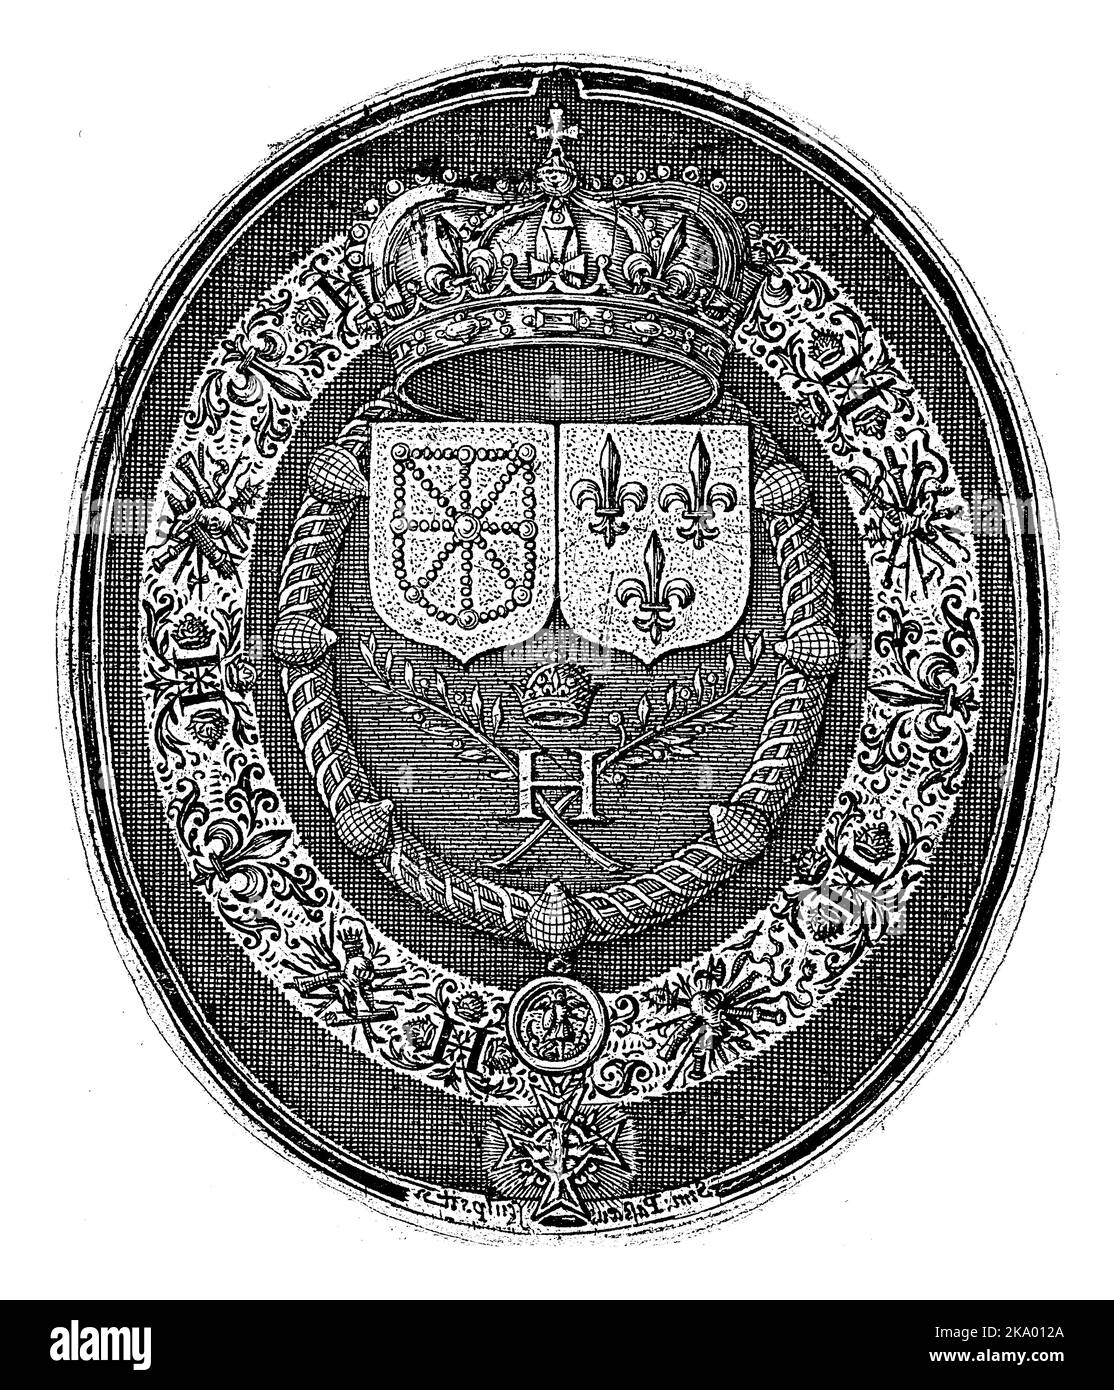 Medaglione con lo stemma di Francia e Navarra. Sull'obverso della medaglia il doppio ritratto di Enrico IV e Maria de' Medici. Foto Stock